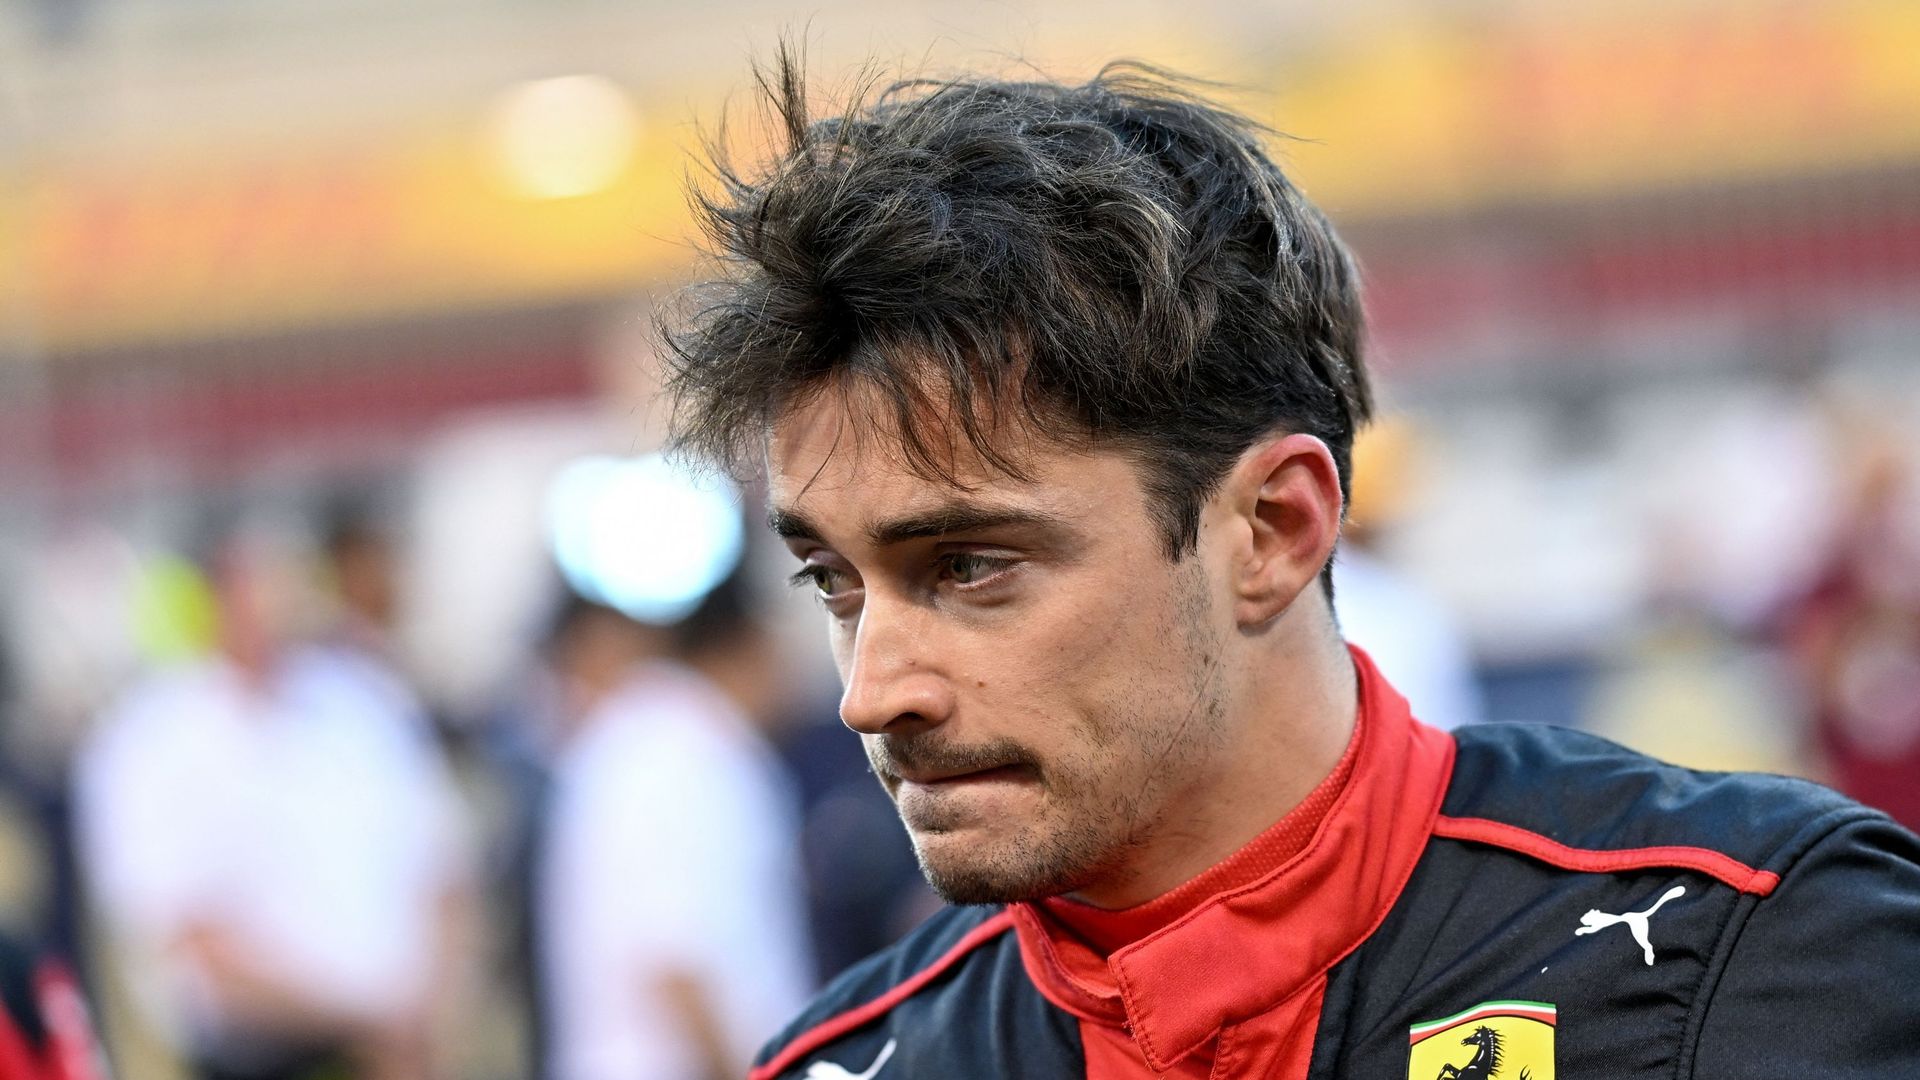 Charles Leclerc écope de dix places de pénalité sur la grille de départ du  Grand Prix d'Arabie saoudite 